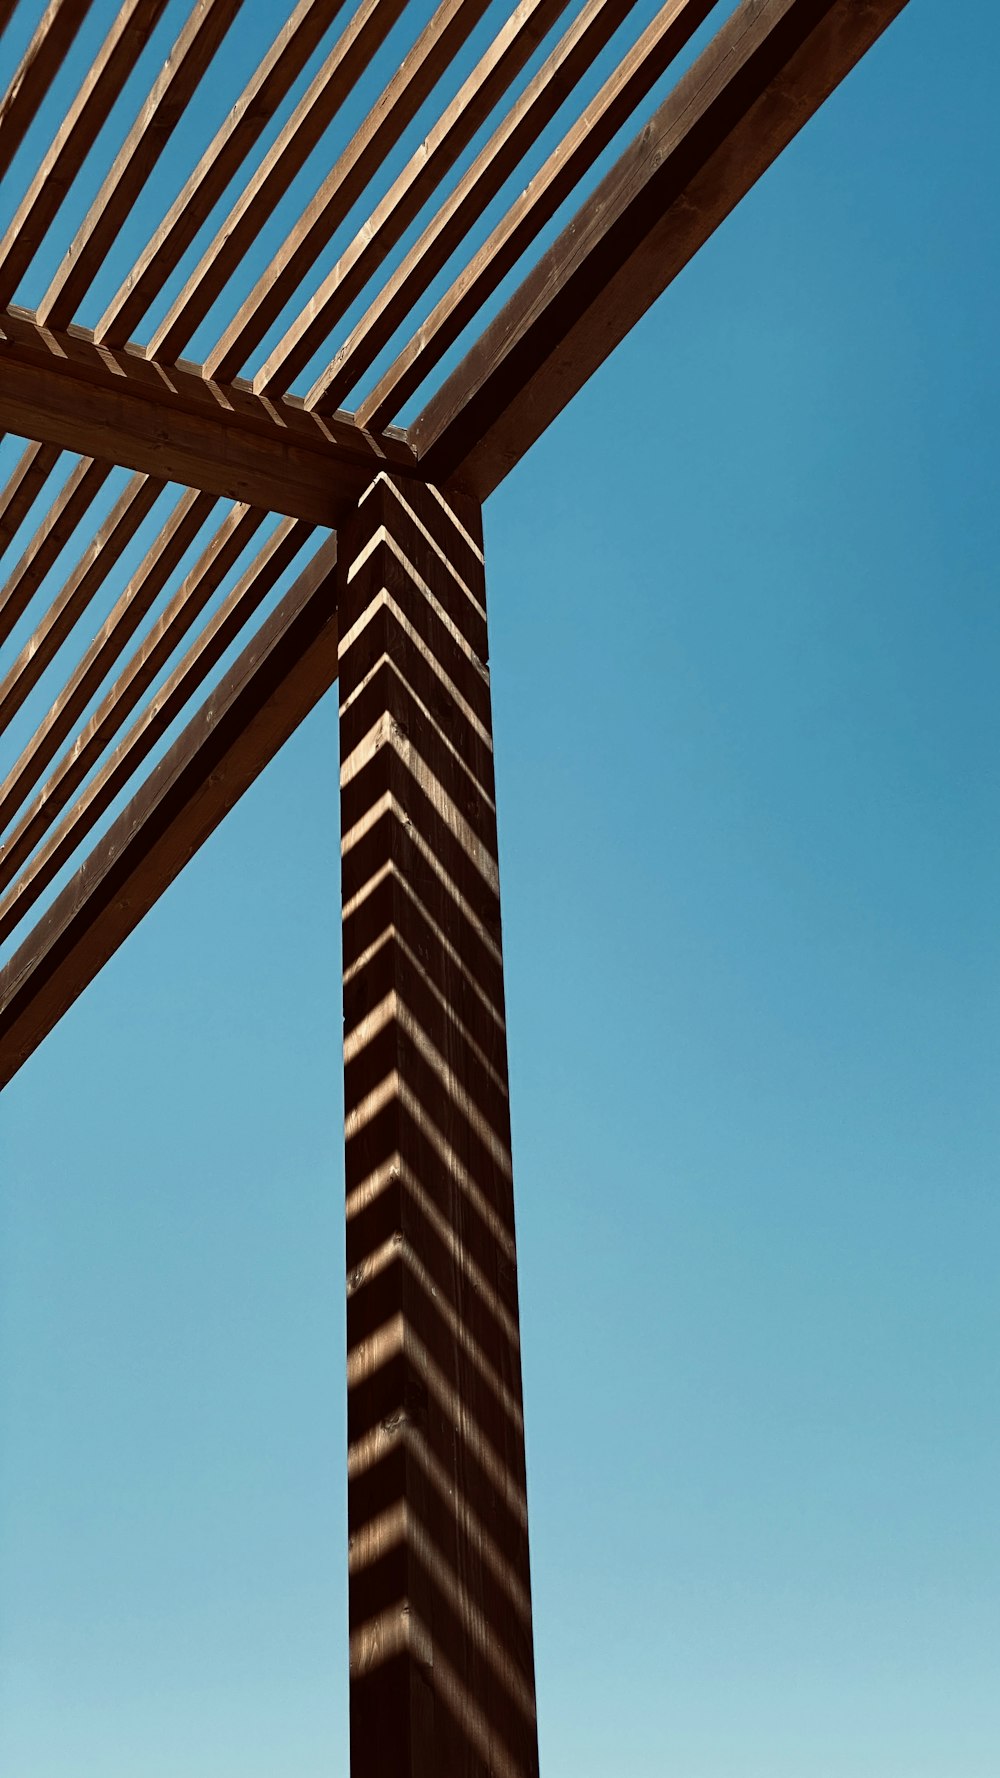 brown wooden frame under blue sky during daytime